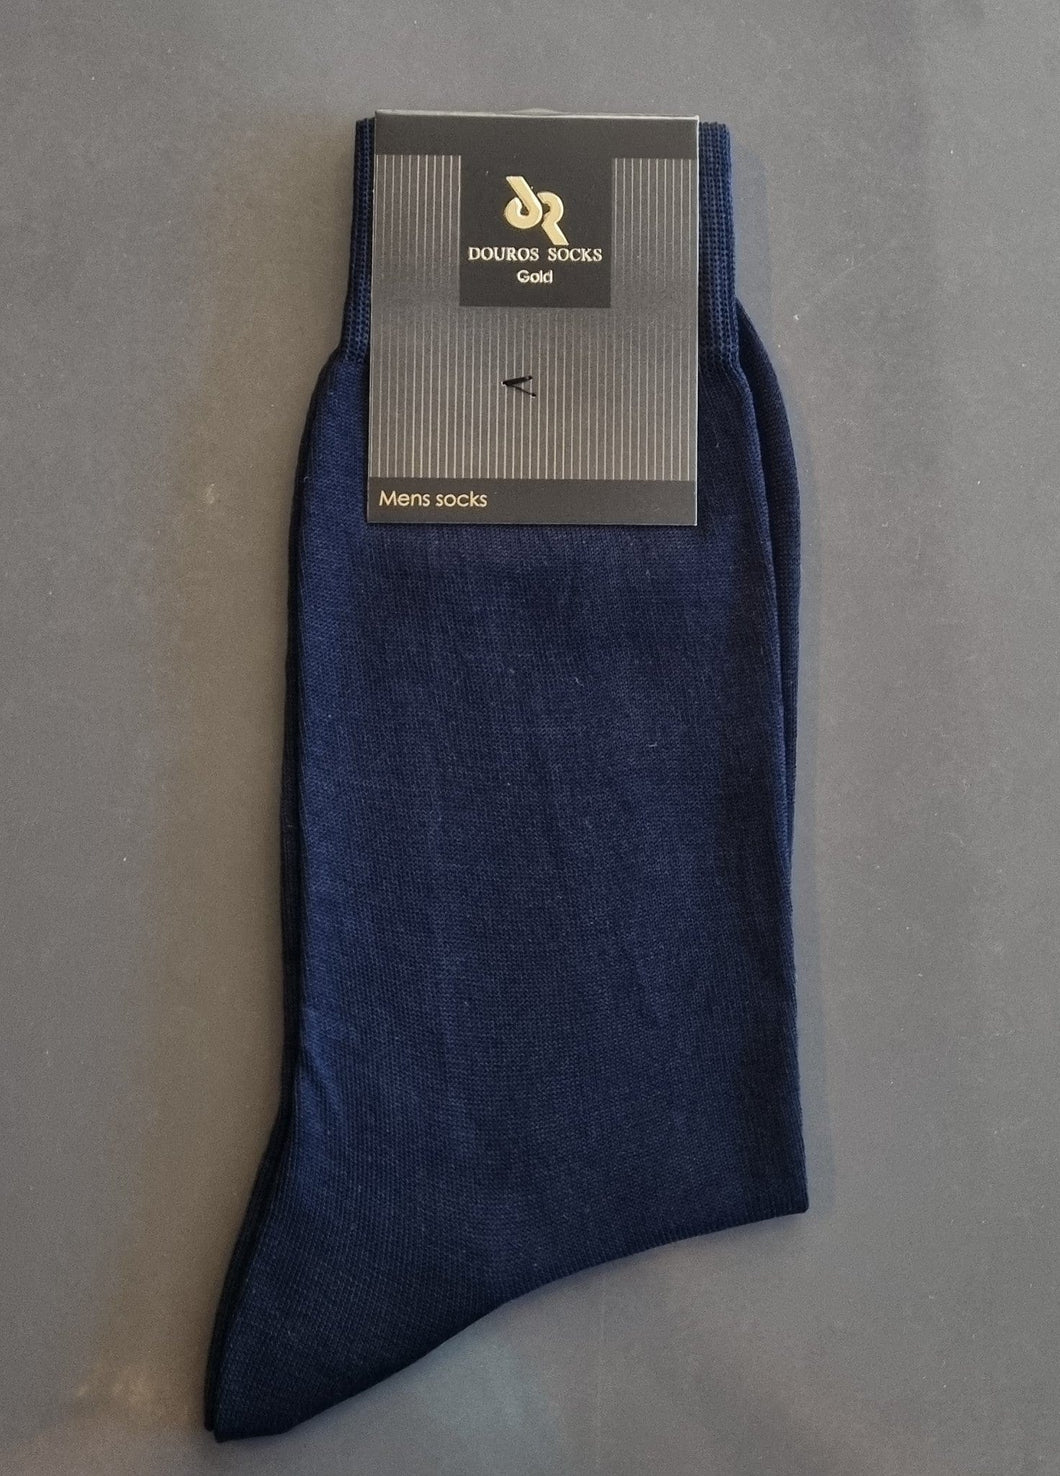 Ανδρική Βαμβακερή Μερσεριζέ Κάλτσα Μπλε Douros 590 | evaunderwear